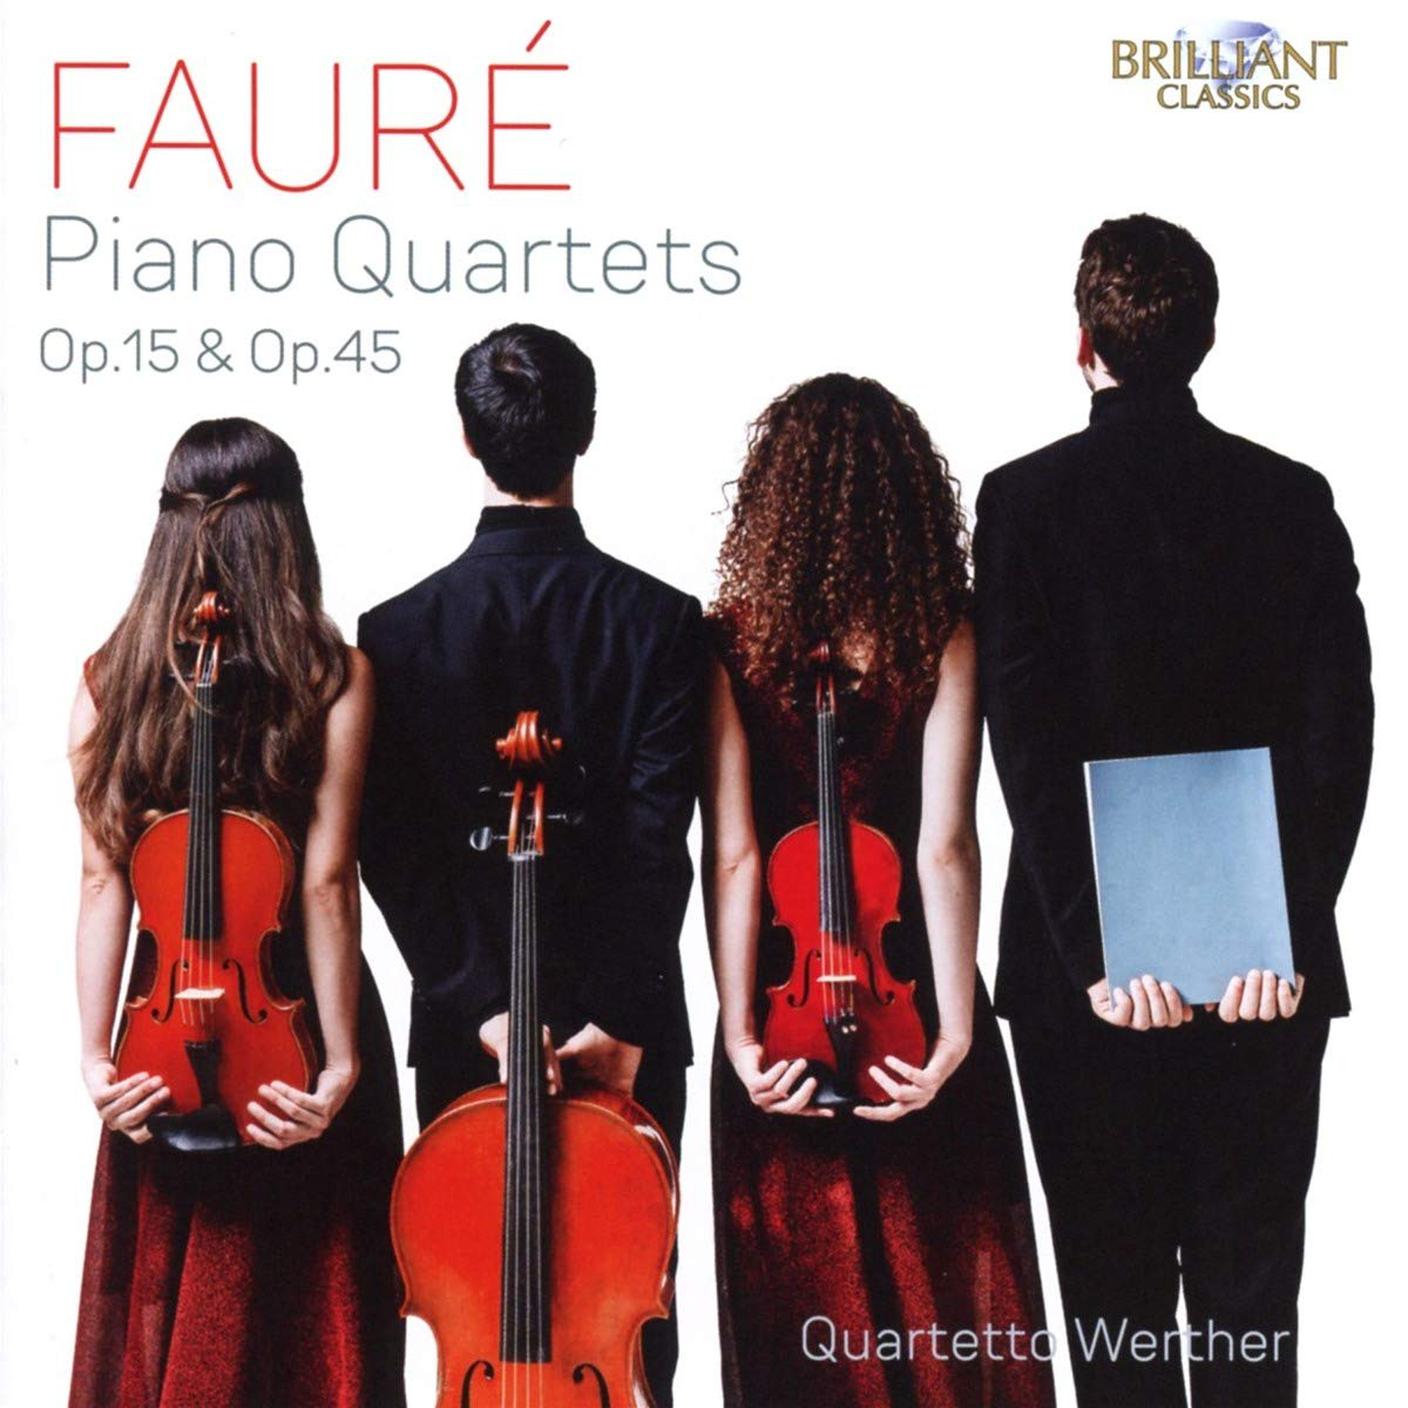 "Fauré" di Quartetto Werther; Brilliant Classics (dettaglio copertina)